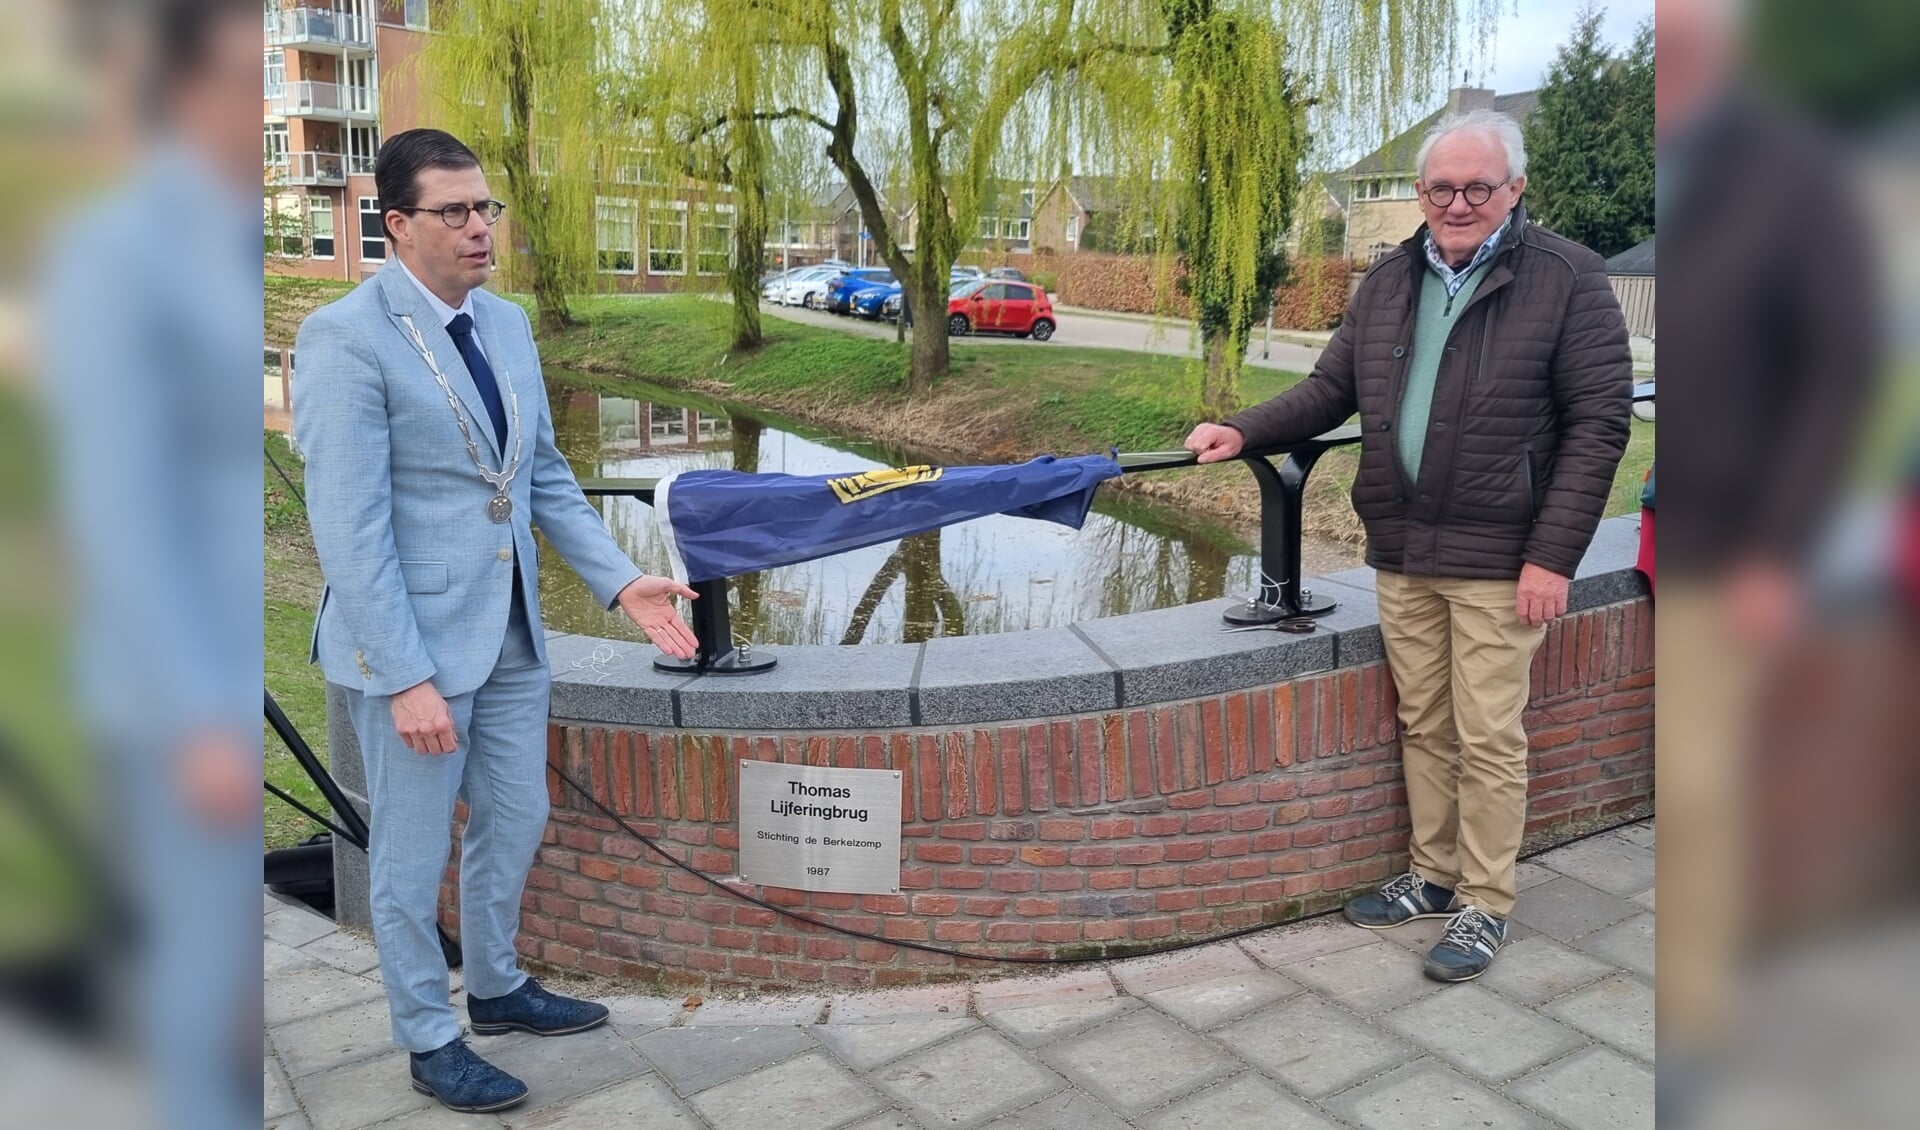 Onthulling van het naamschild door burgemeester Joost van Oostrum (l) en Berkelschipper Herman ten Brinkhof. Foto: Rob Weeber